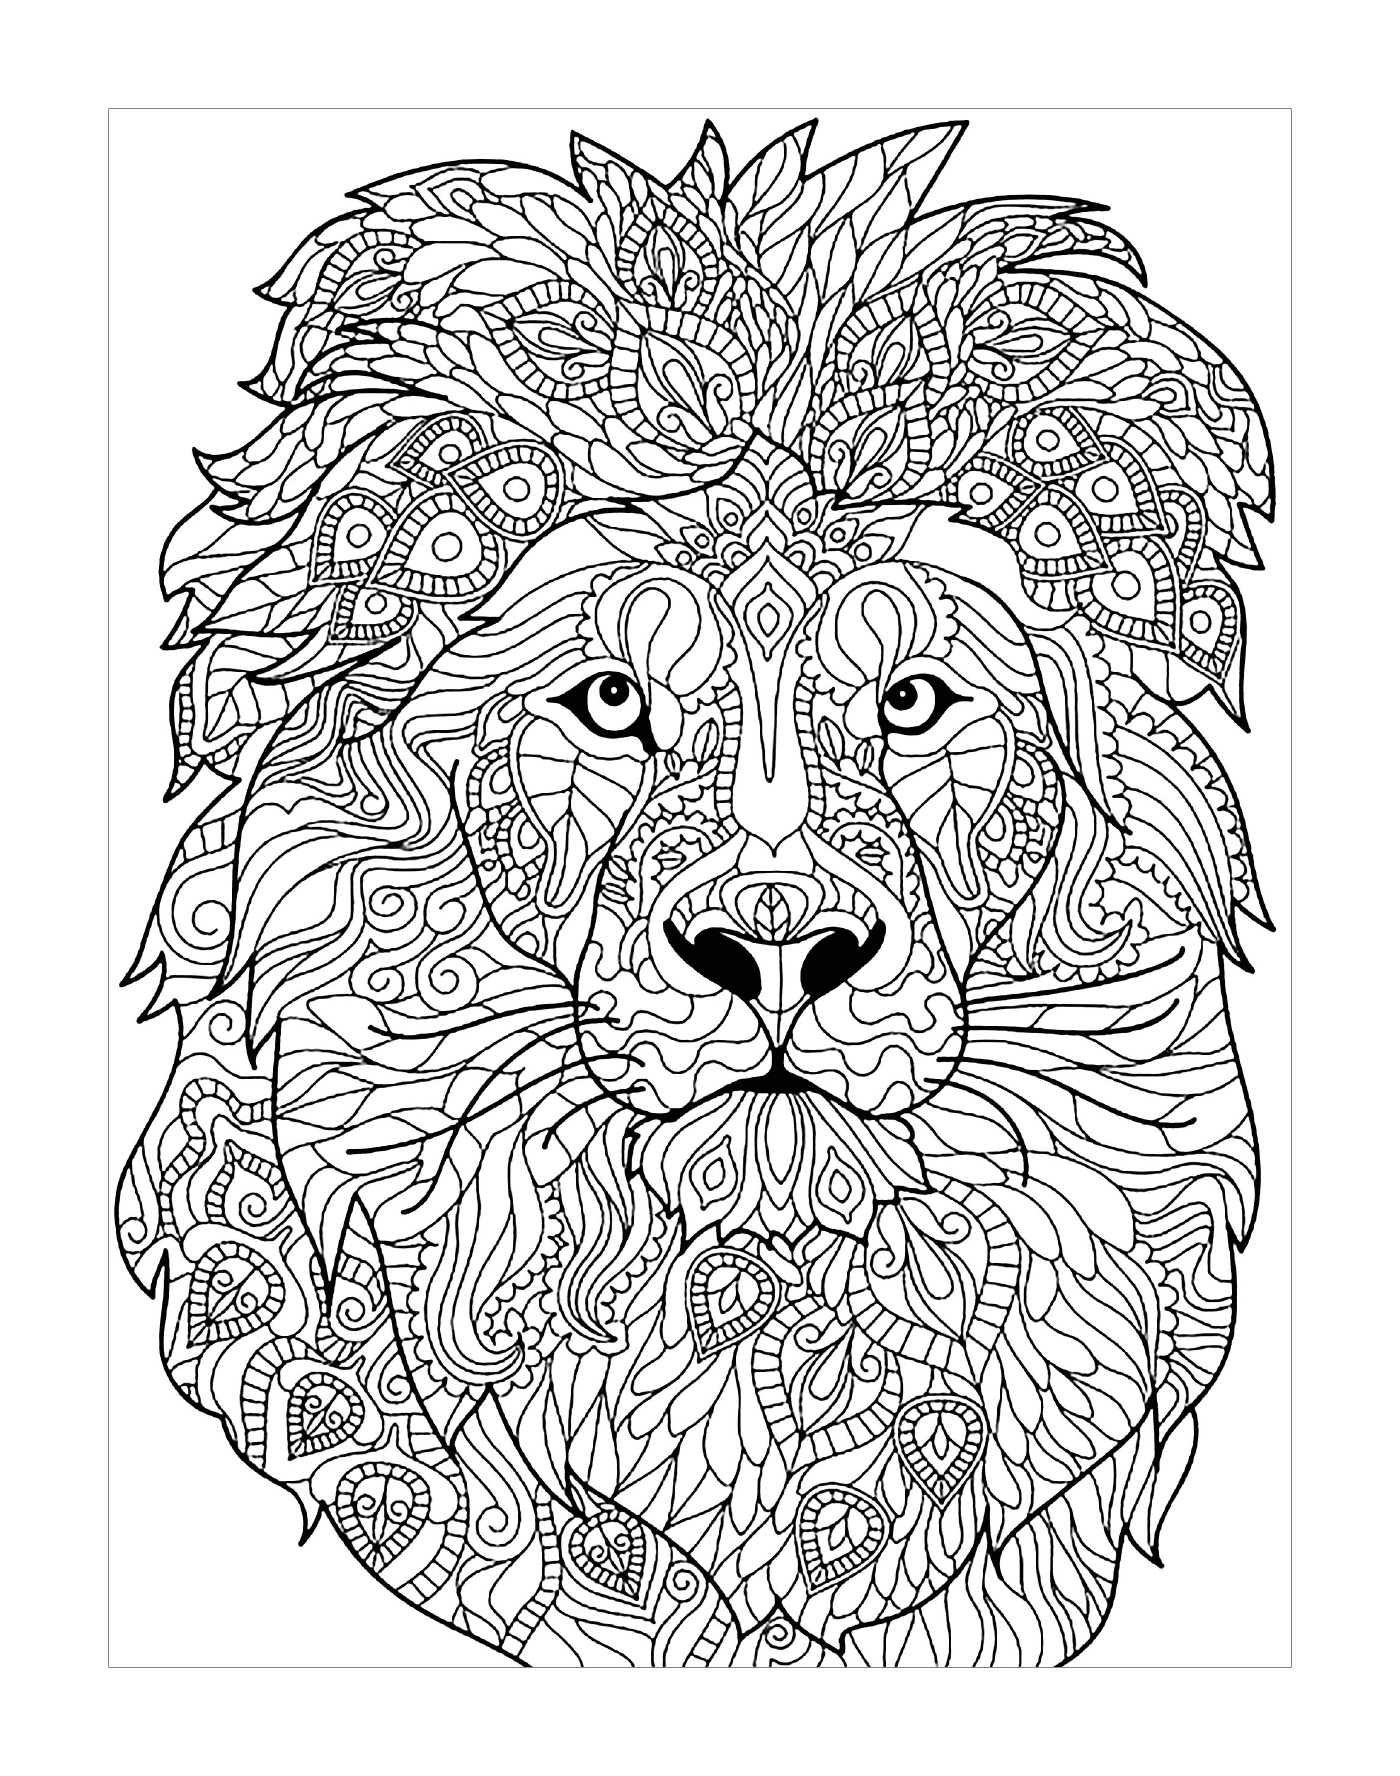  León adulto en patrones complejos 